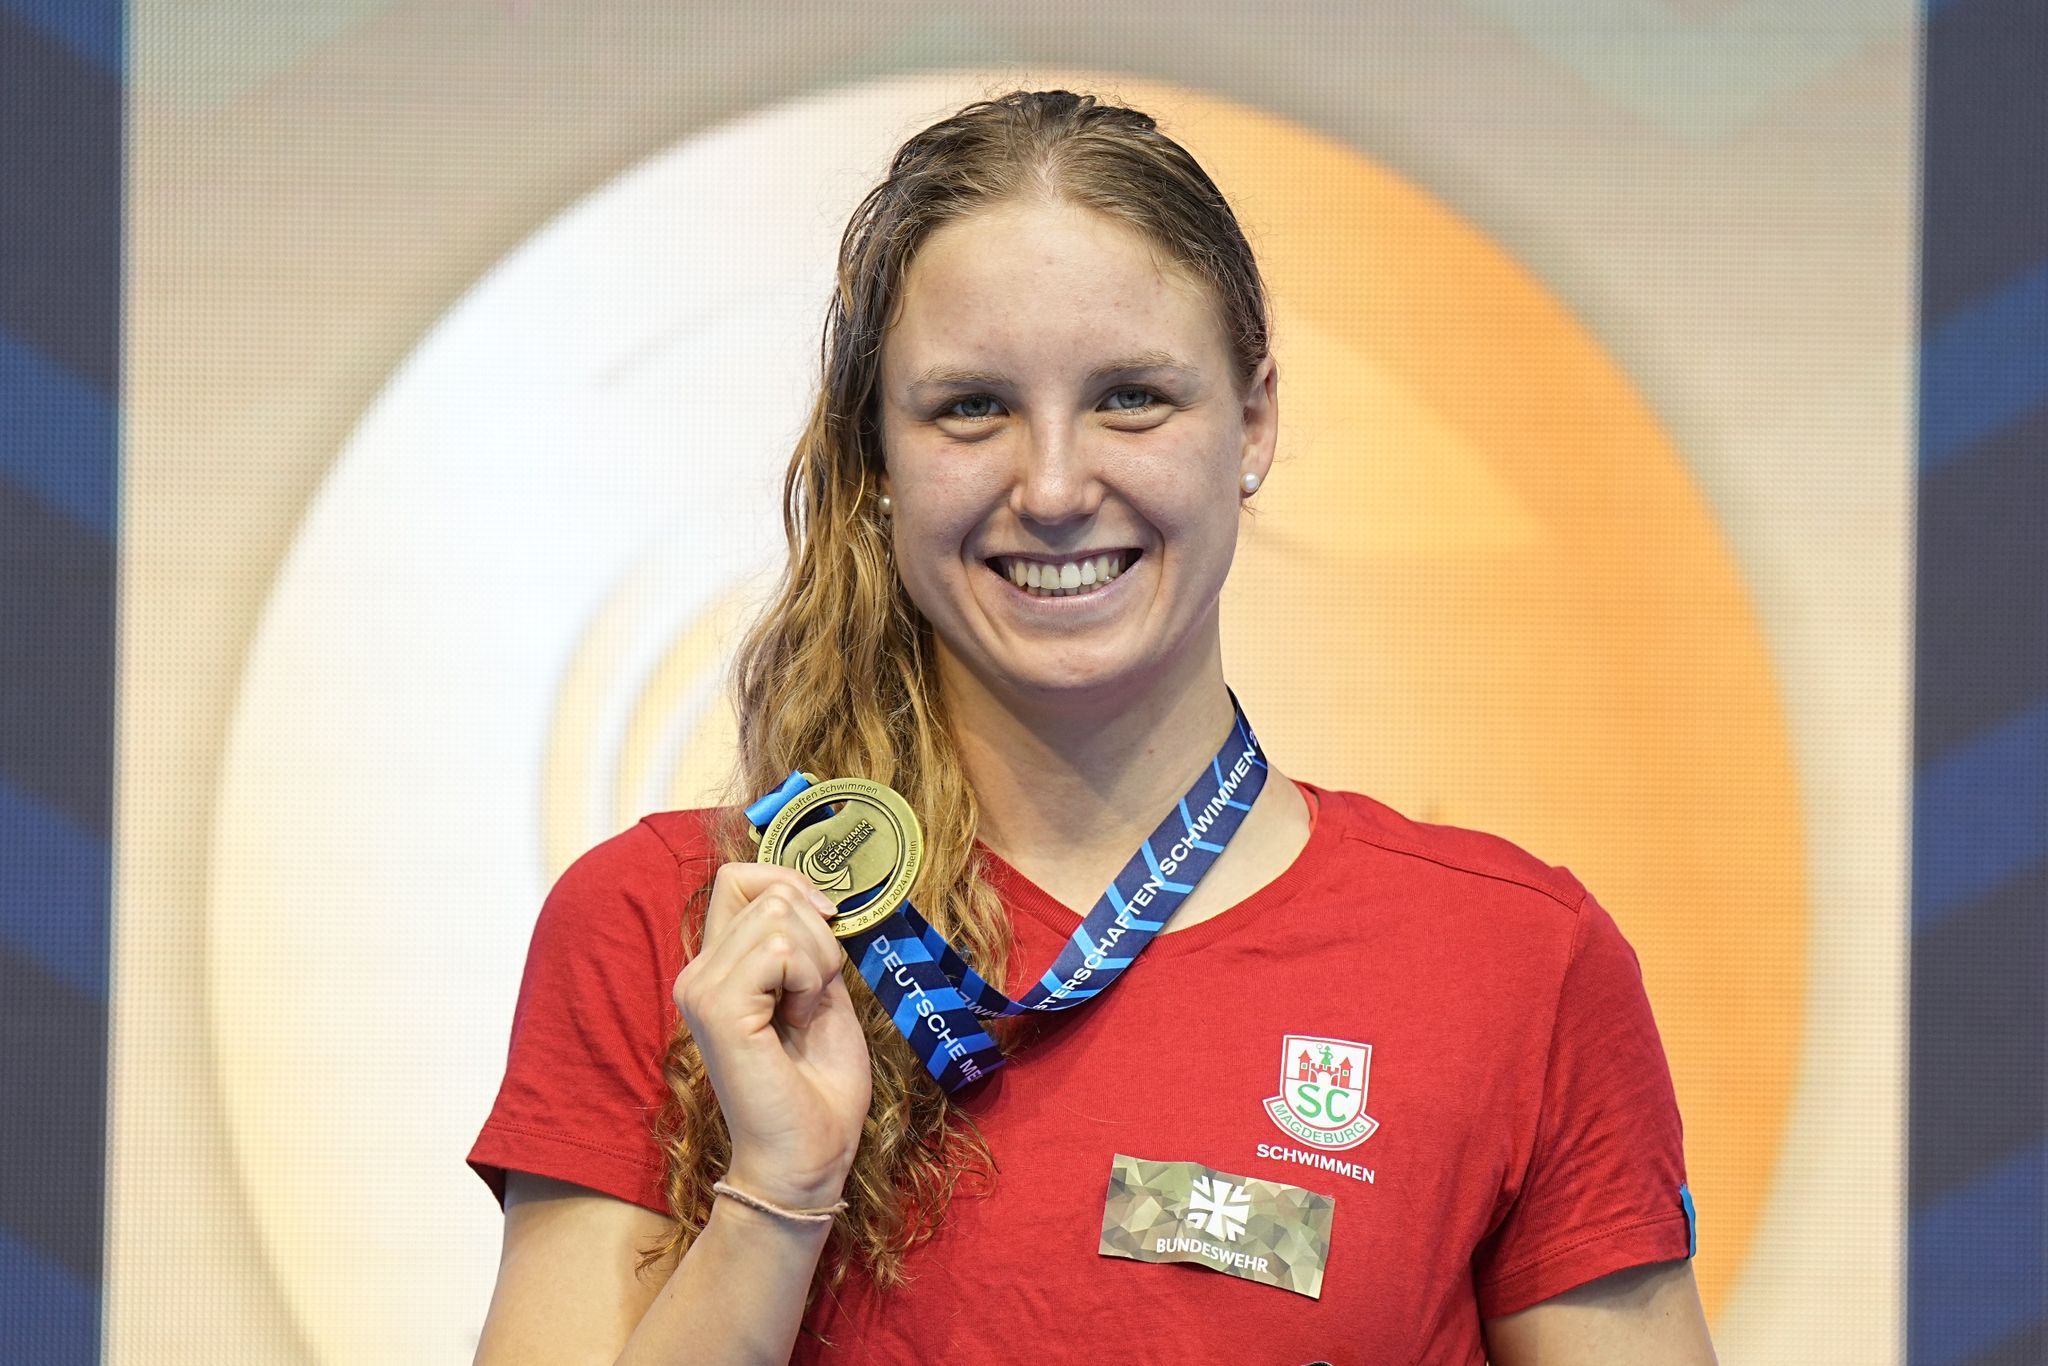 Isabel Gose mit beeindruckender Leistung bei Schwimm-Meisterschaften in Berlin